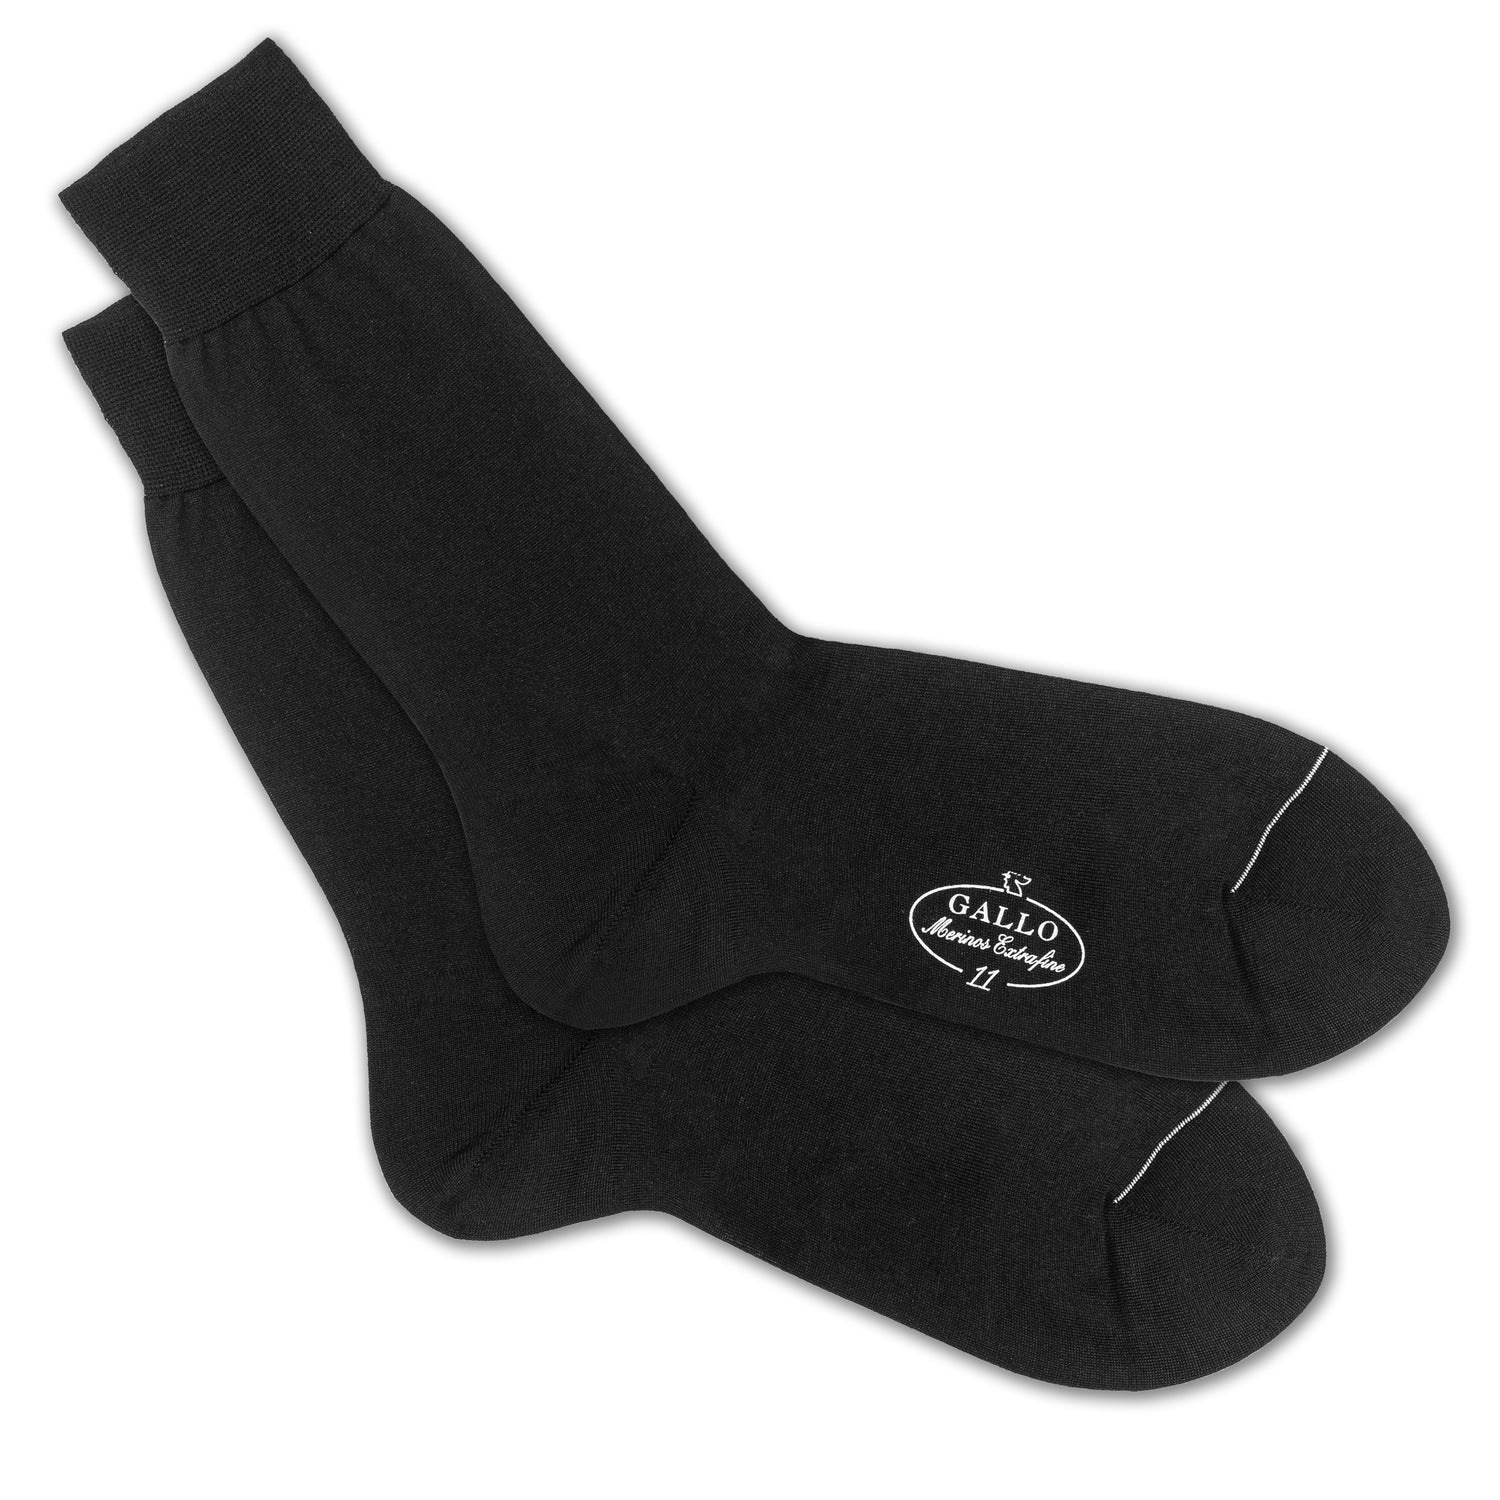 Italienische Herren-Socken in schwarz von GALLO, aus 80% Baumwolle mit 20% Polyamid. Glatte Optik. Gefertigt in Italien. Paarweise Ansicht